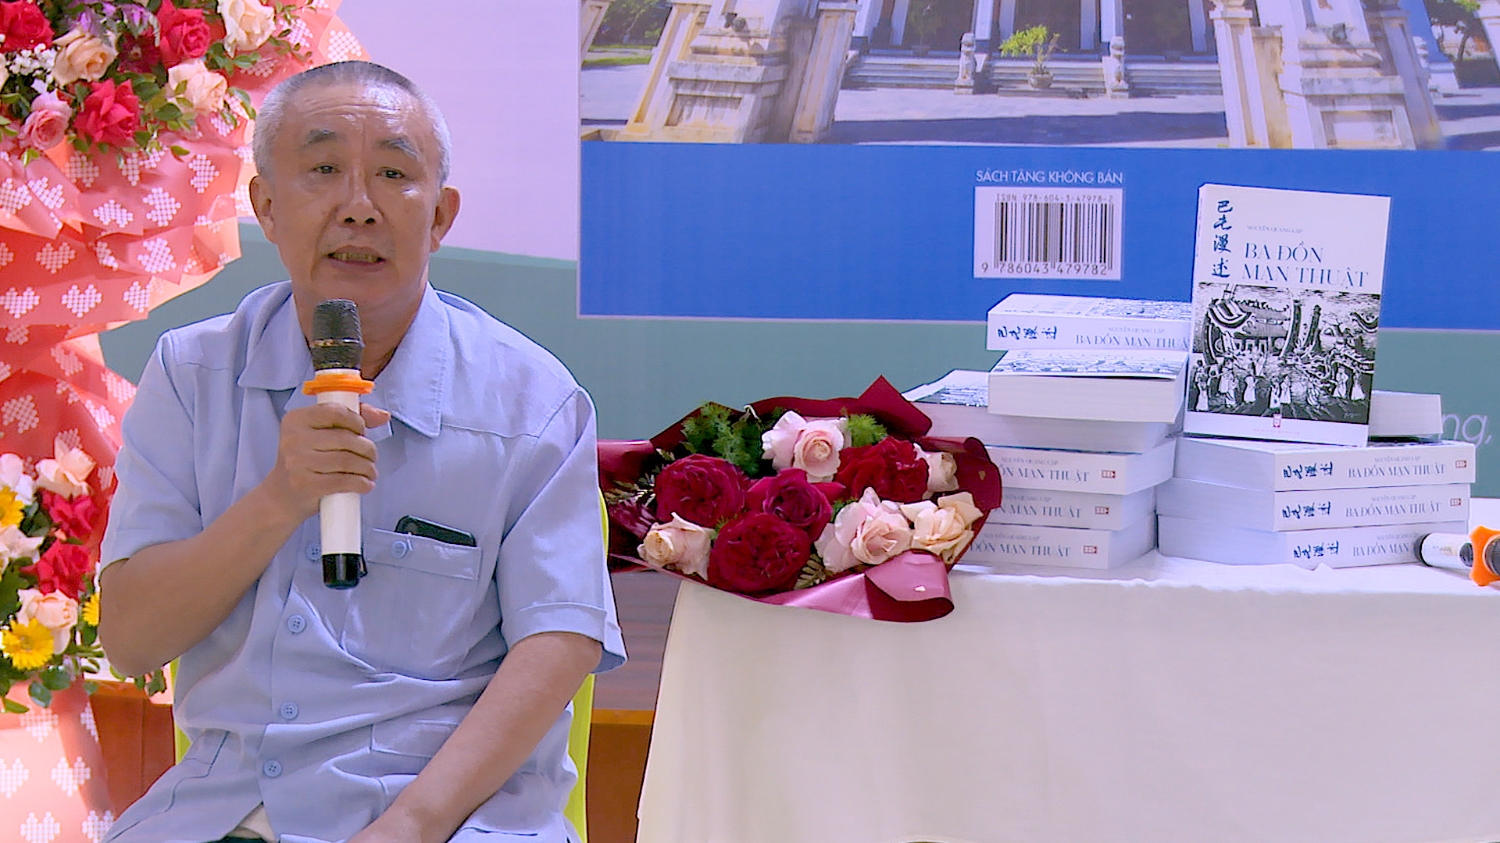 Nhà văn Nguyễn Quang Lập giới thiệu về cuốn Ba Đồn Mạn thuật